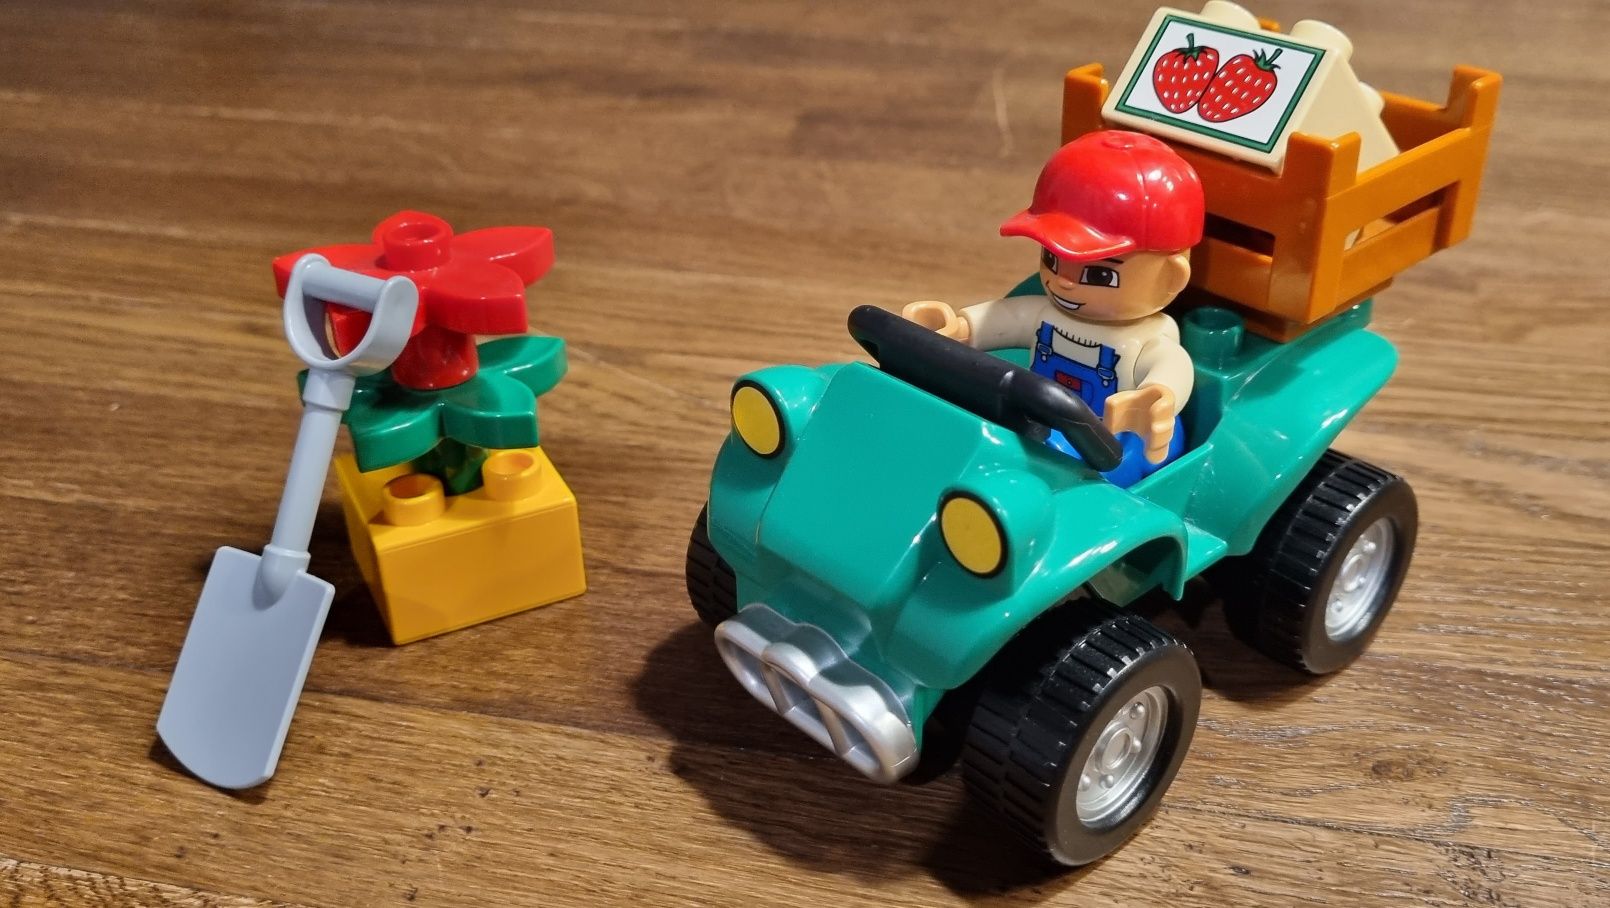 Klocki LEGO Duplo 5645 - Quad farmera